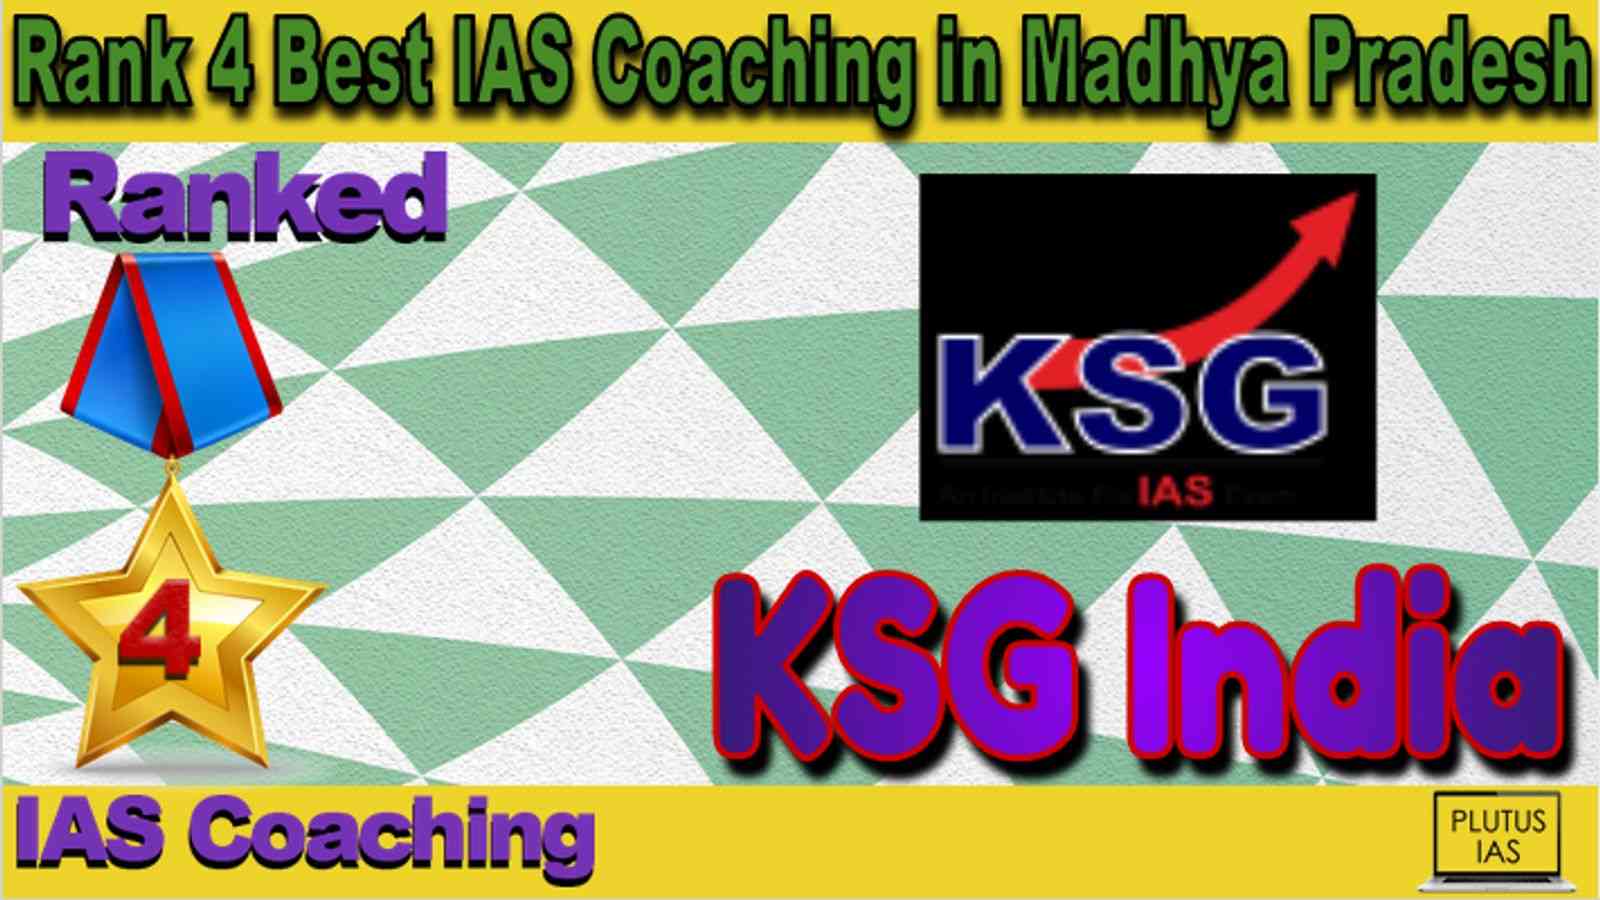 Rank 4 Best IAS Coaching in Madhya Pradesh